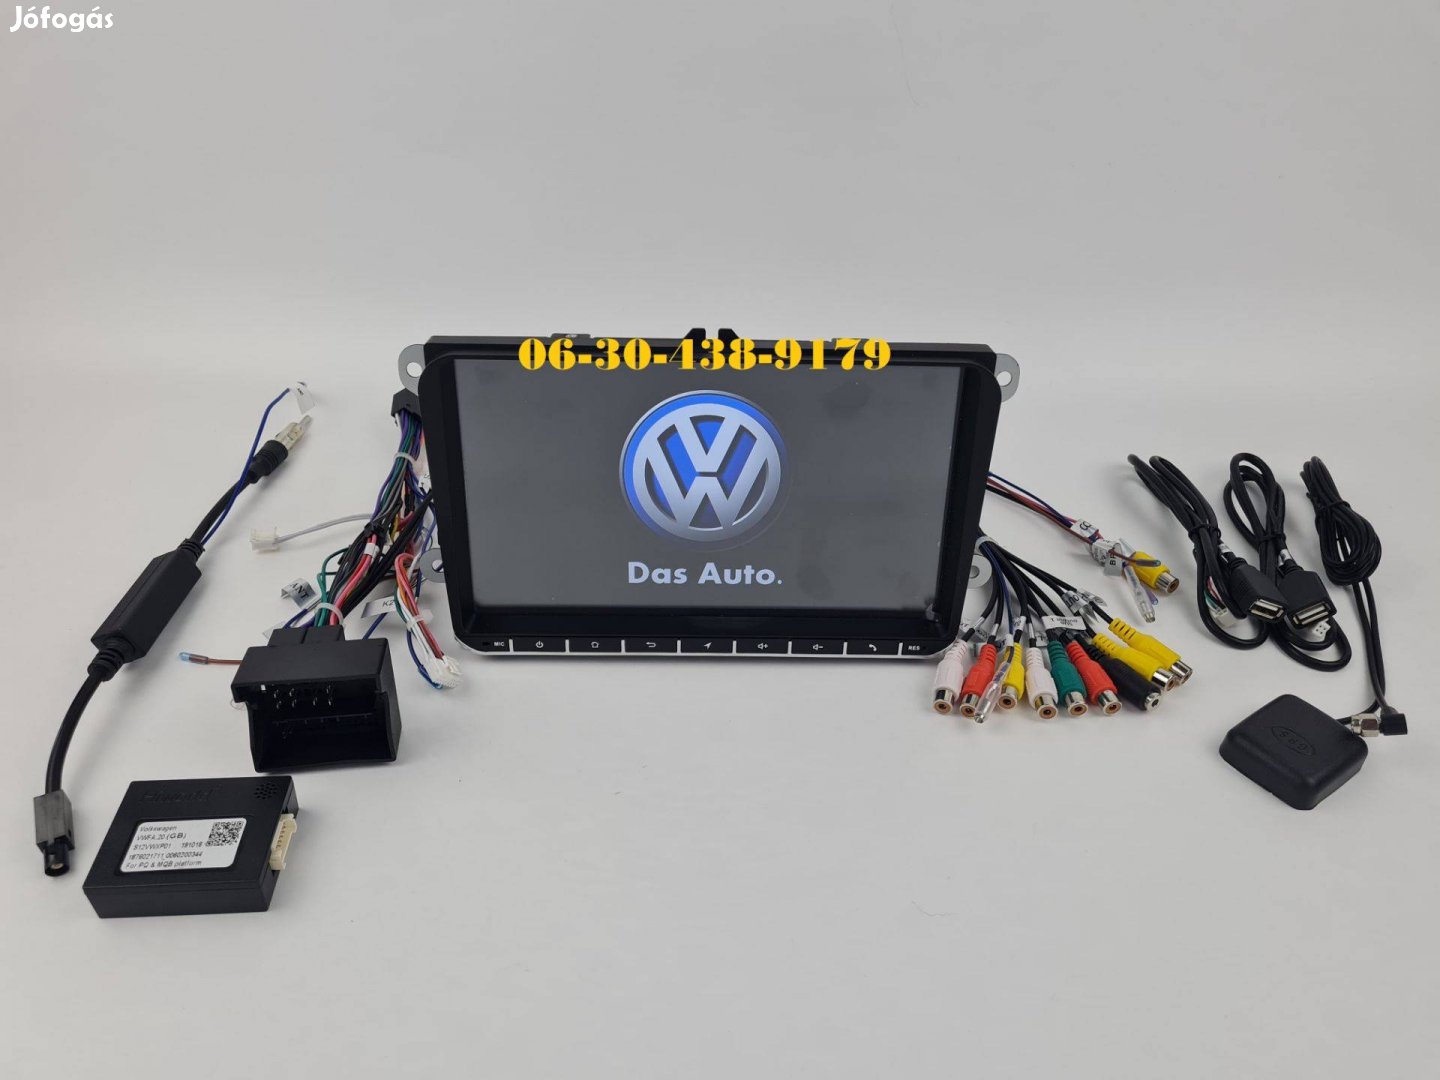 VW / Skoda / Seat Android autórádió fejegység gyári helyre 9' rádió